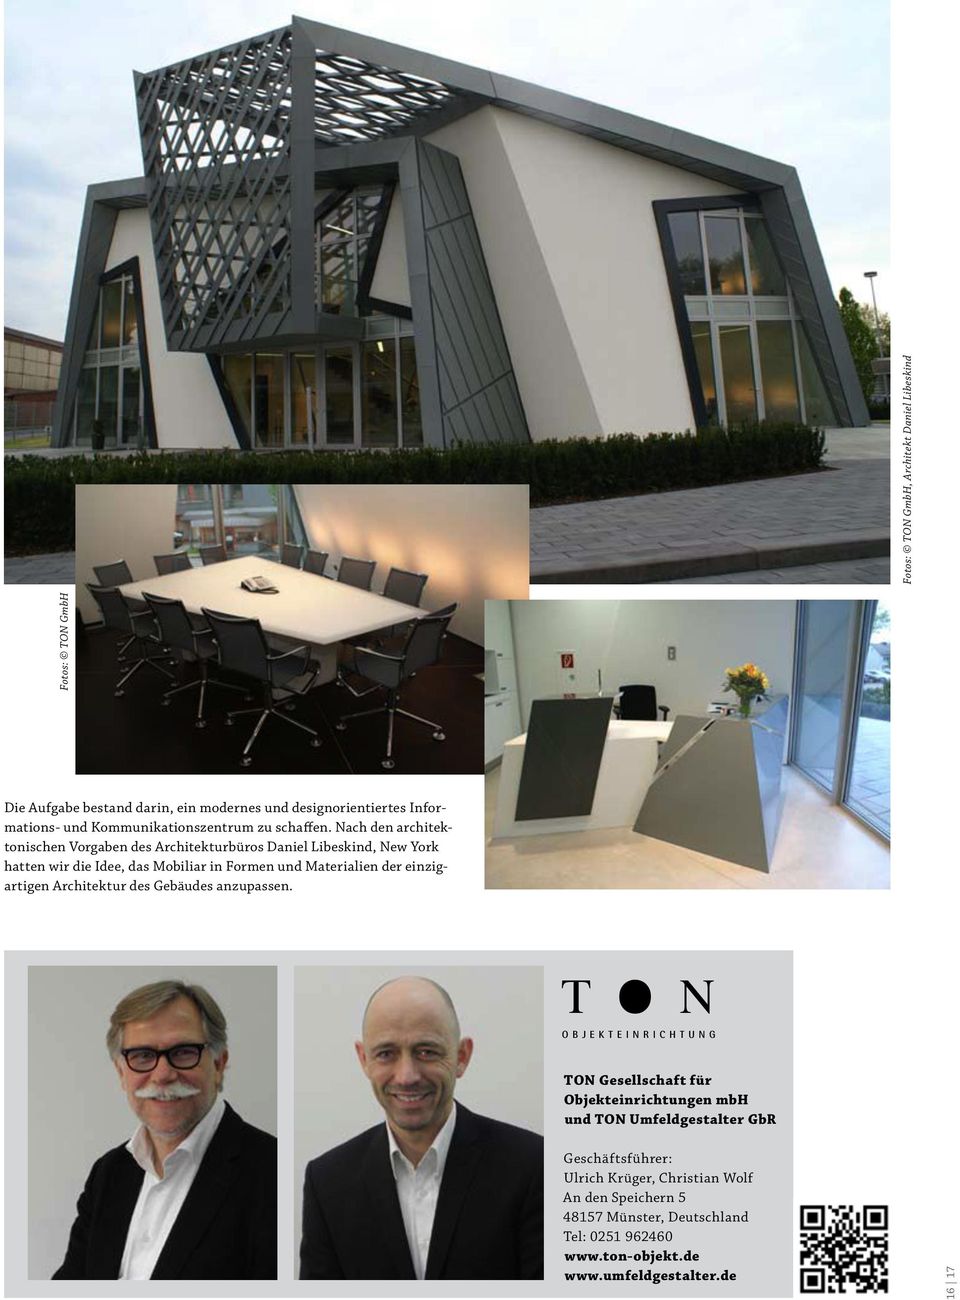 Nach den architektonischen Vorgaben des Architekturbüros Daniel Libeskind, New york hatten wir die Idee, das Mobiliar in Formen und Materialien der